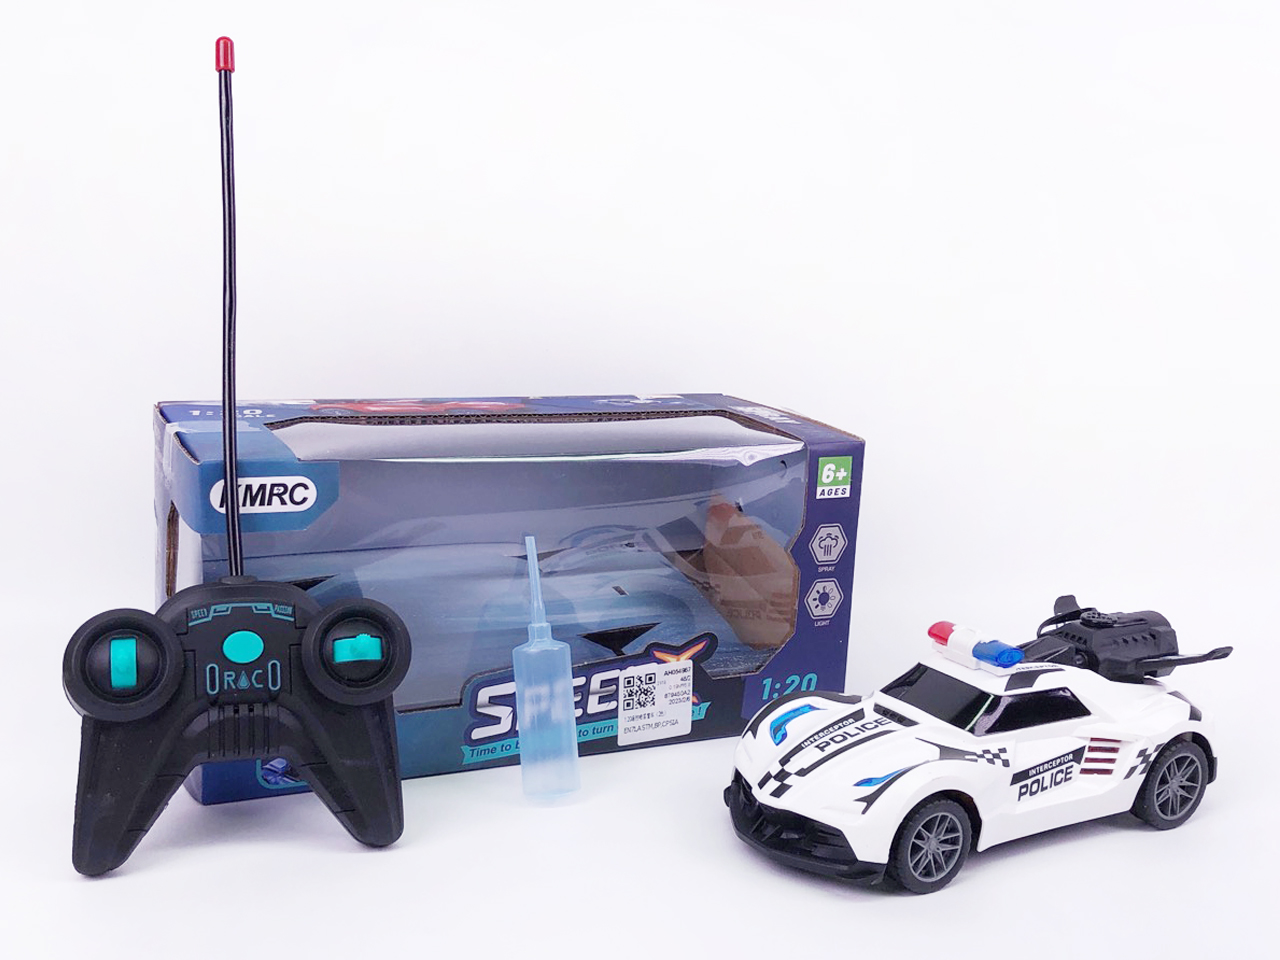 1:20 R/C Spray Police Car(2C) toys